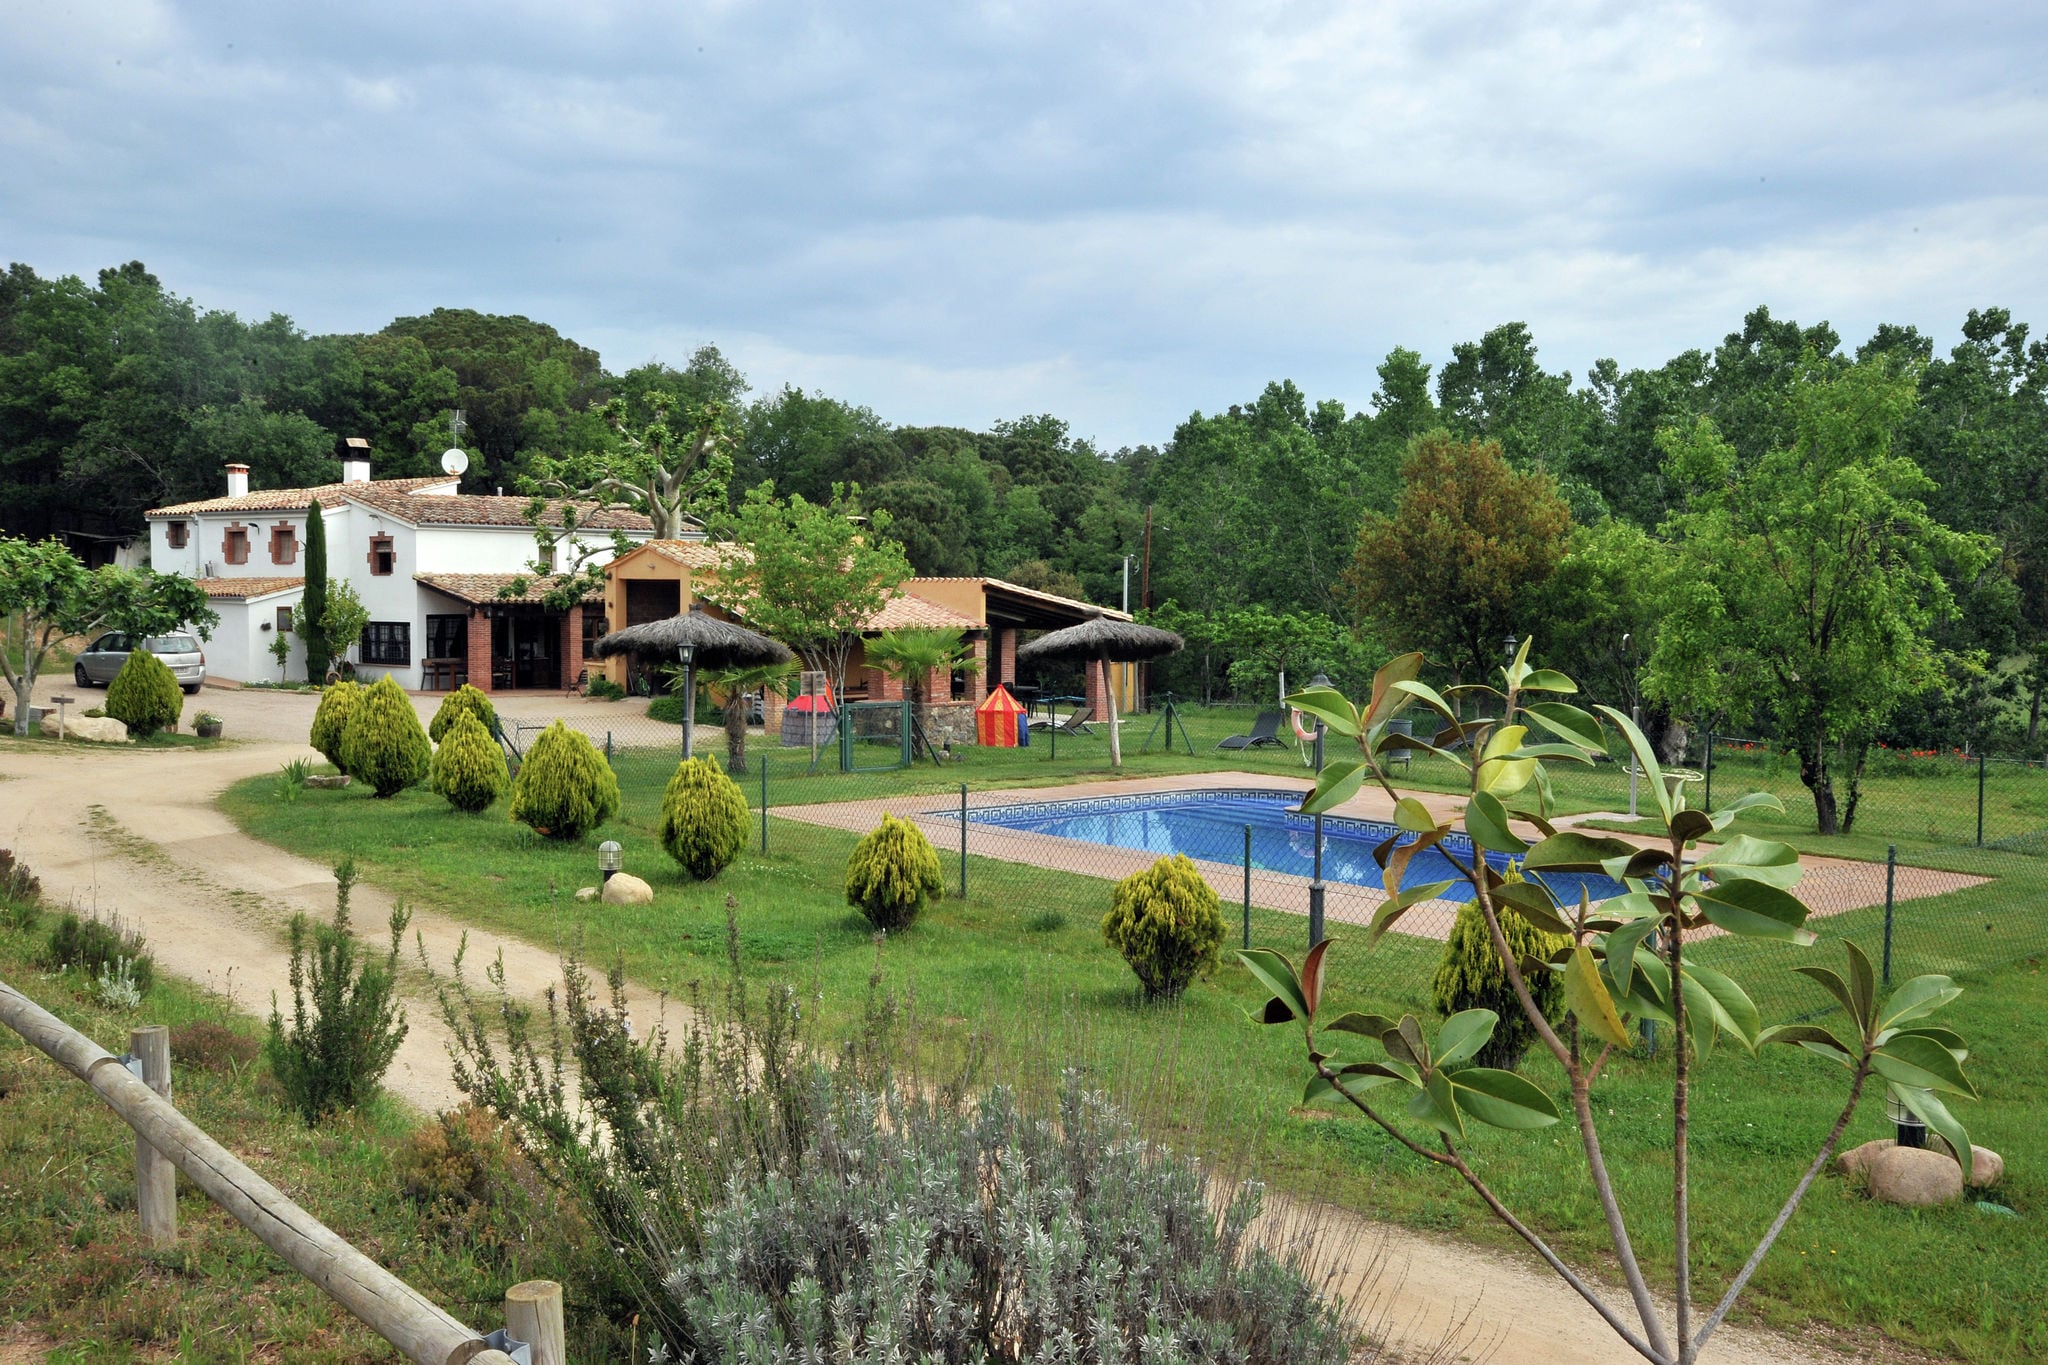 Vrijstaand vakantiehuis met privézwembad ligt landelijk gelegen in Riudarenes.